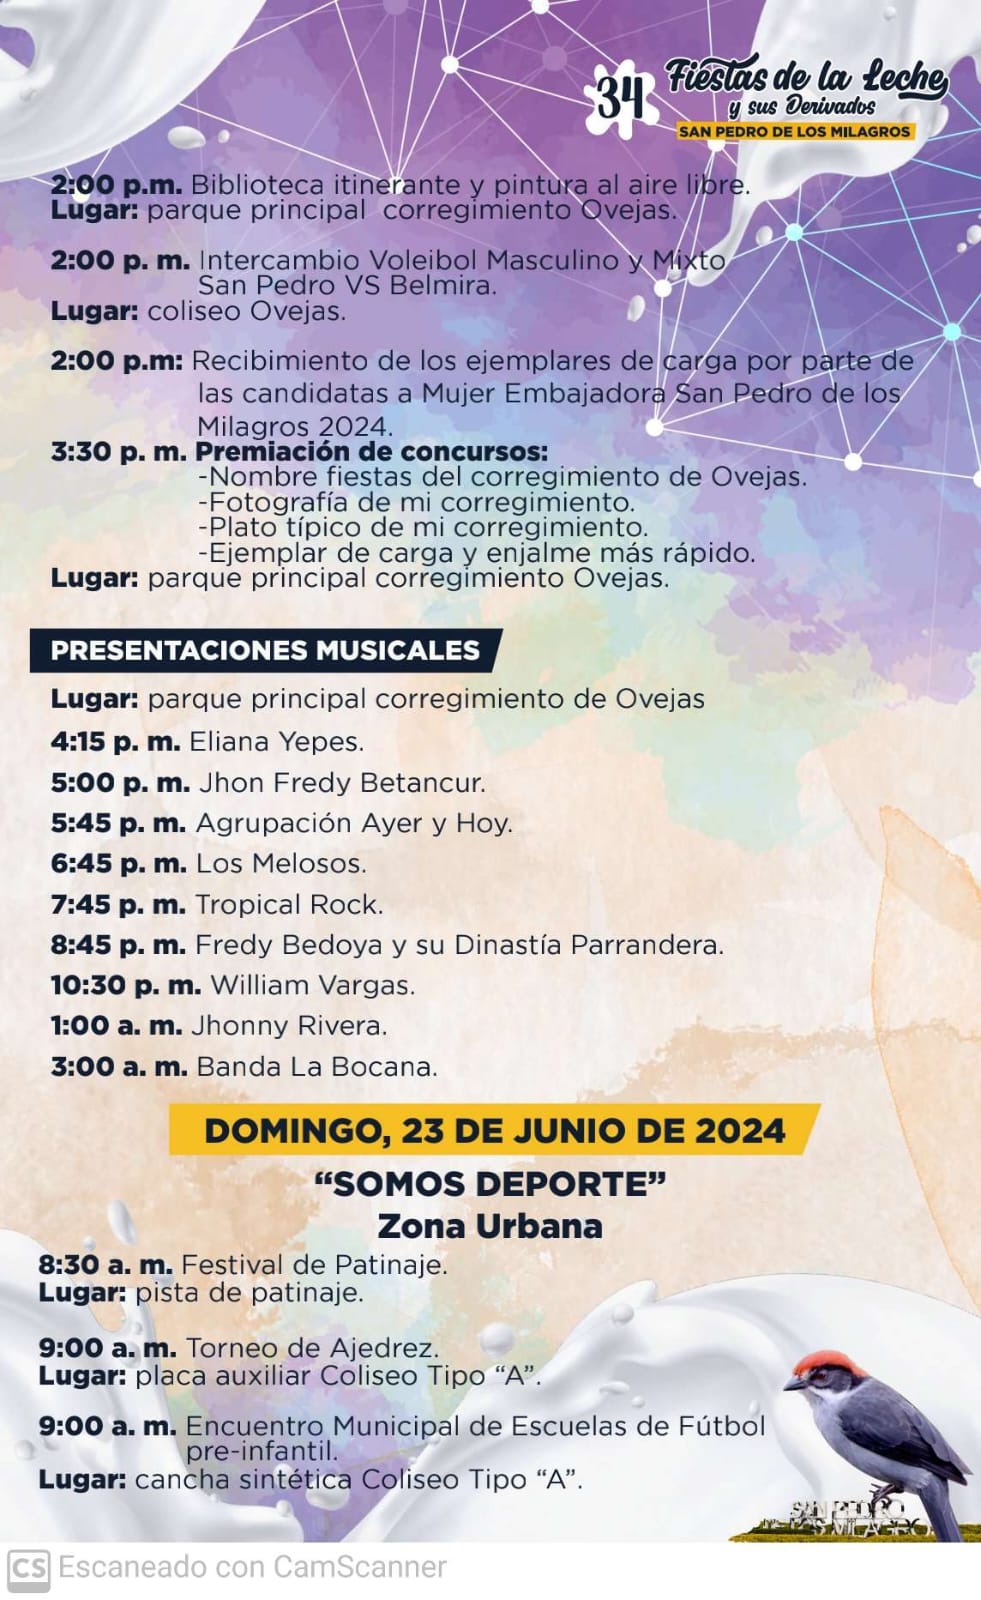 Fiestas de la Leche 2024 - San Pedro de los Milagros - Antioquia - 4